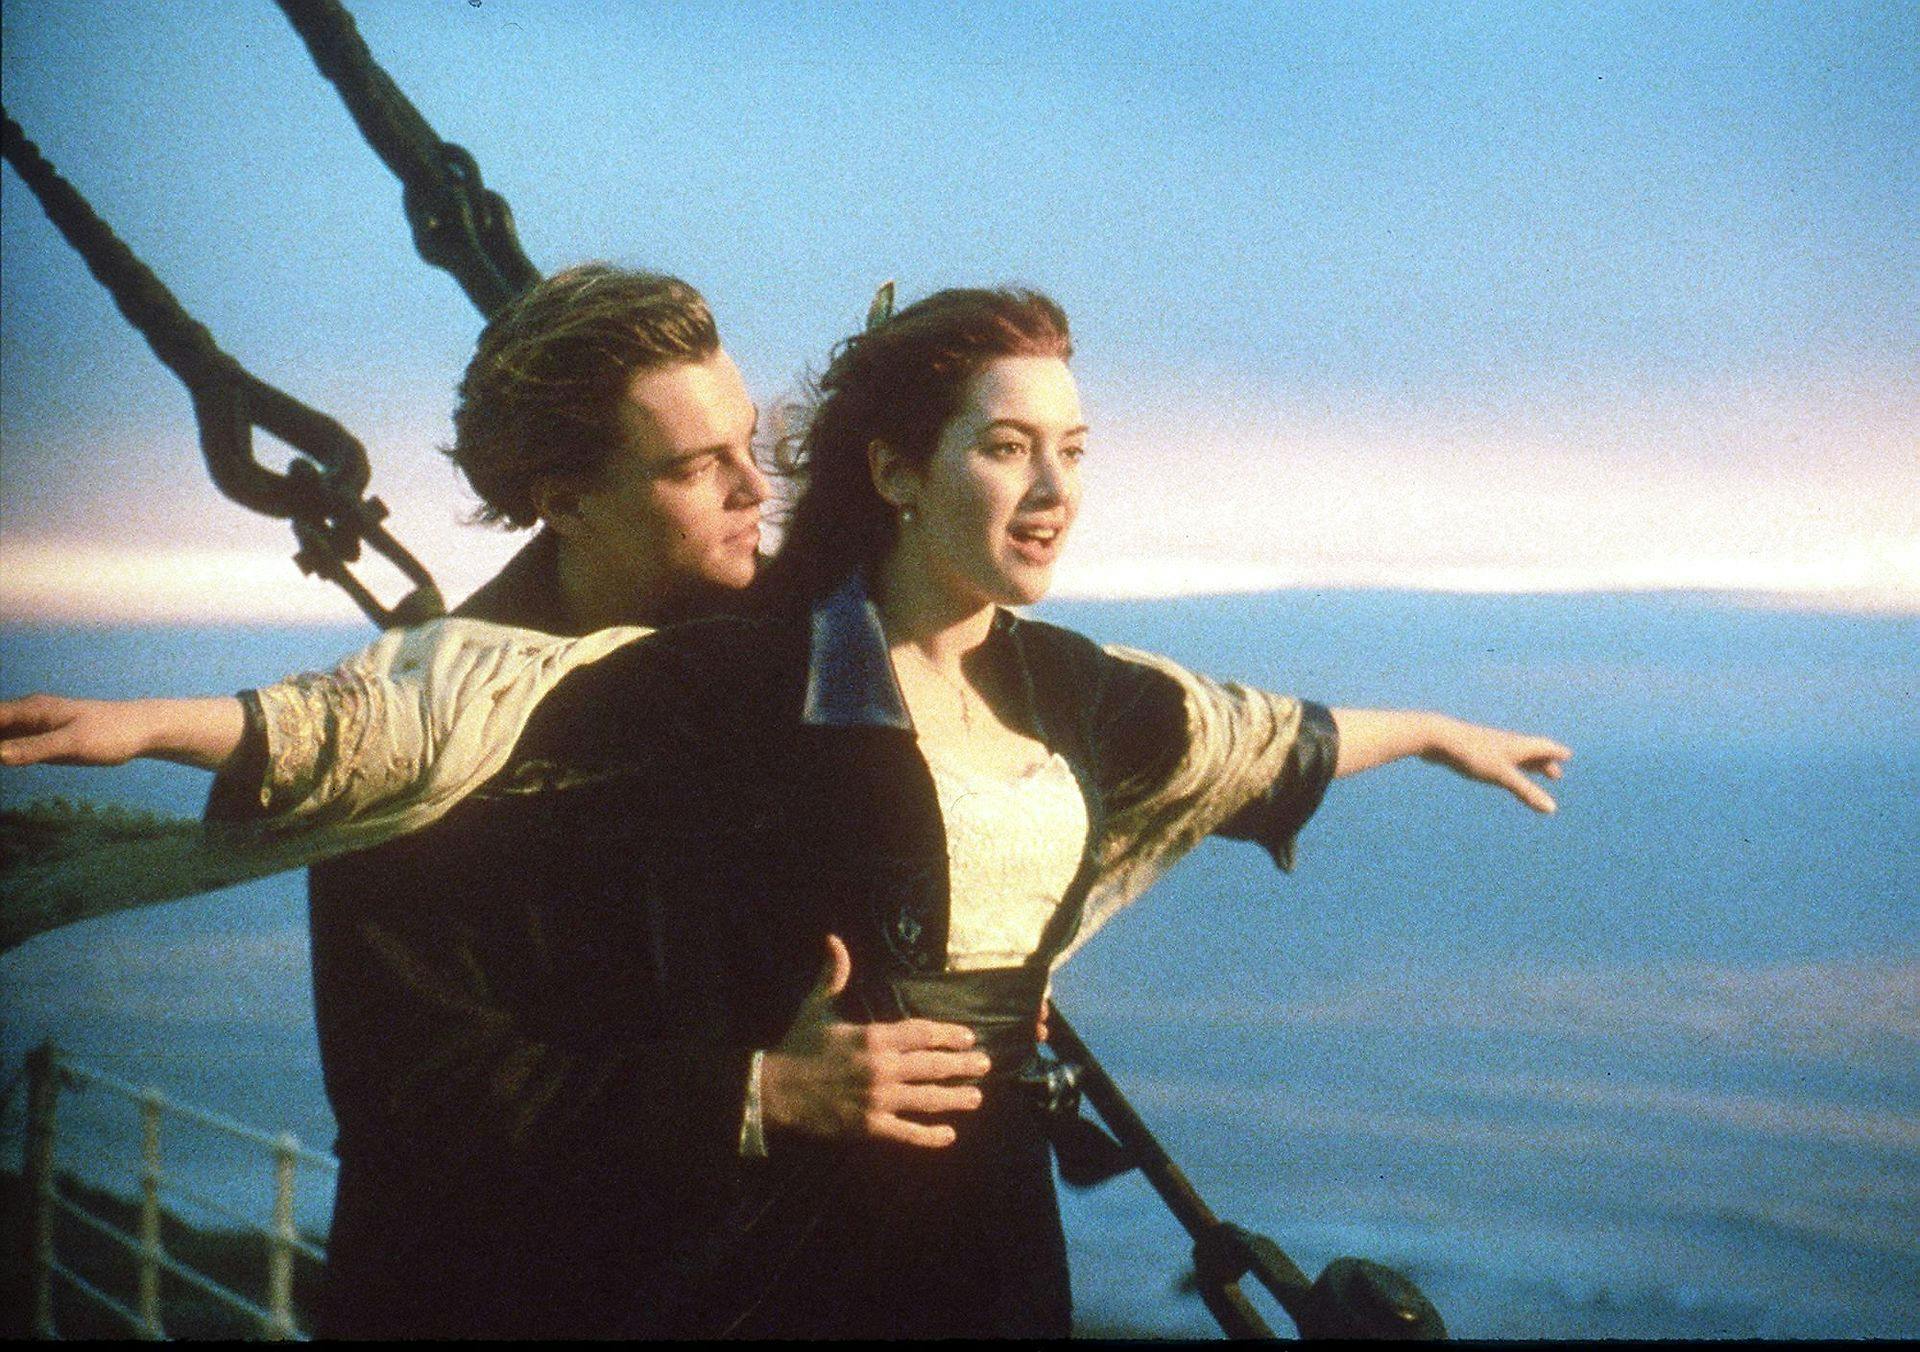 James Cameron står bag den Oscar-vindende spillefilm "Titanic", der handler om den historiske skibsulykke.
